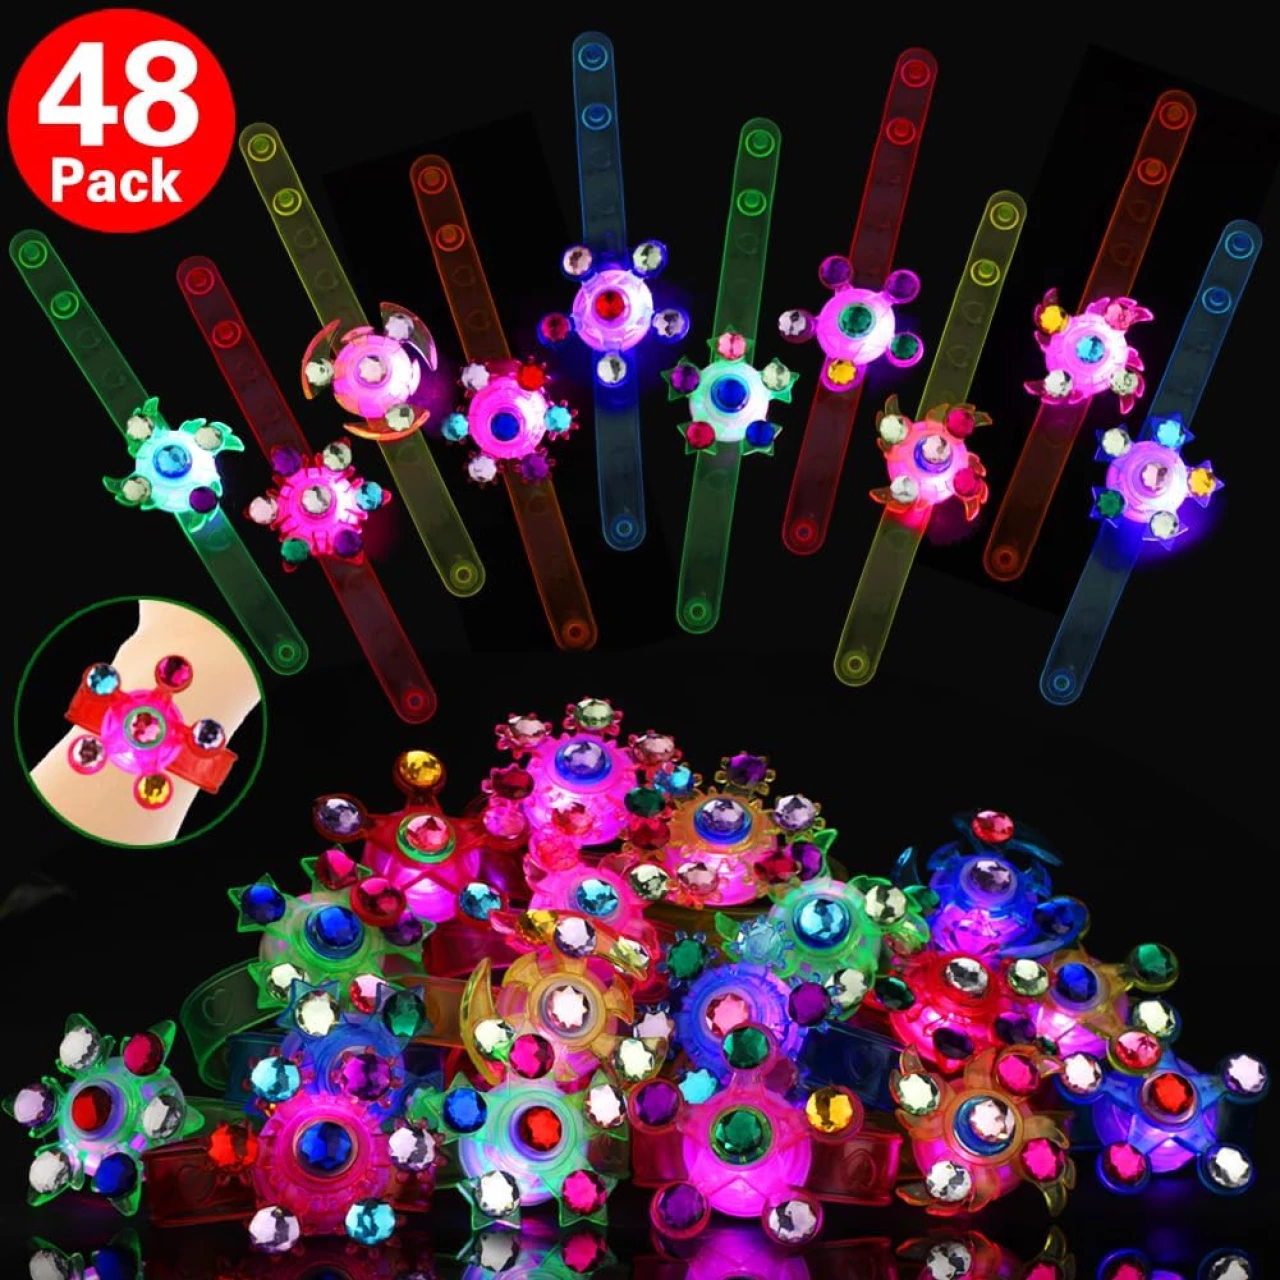 48 Pack LED Light Up Fidget Spinner Bracelets